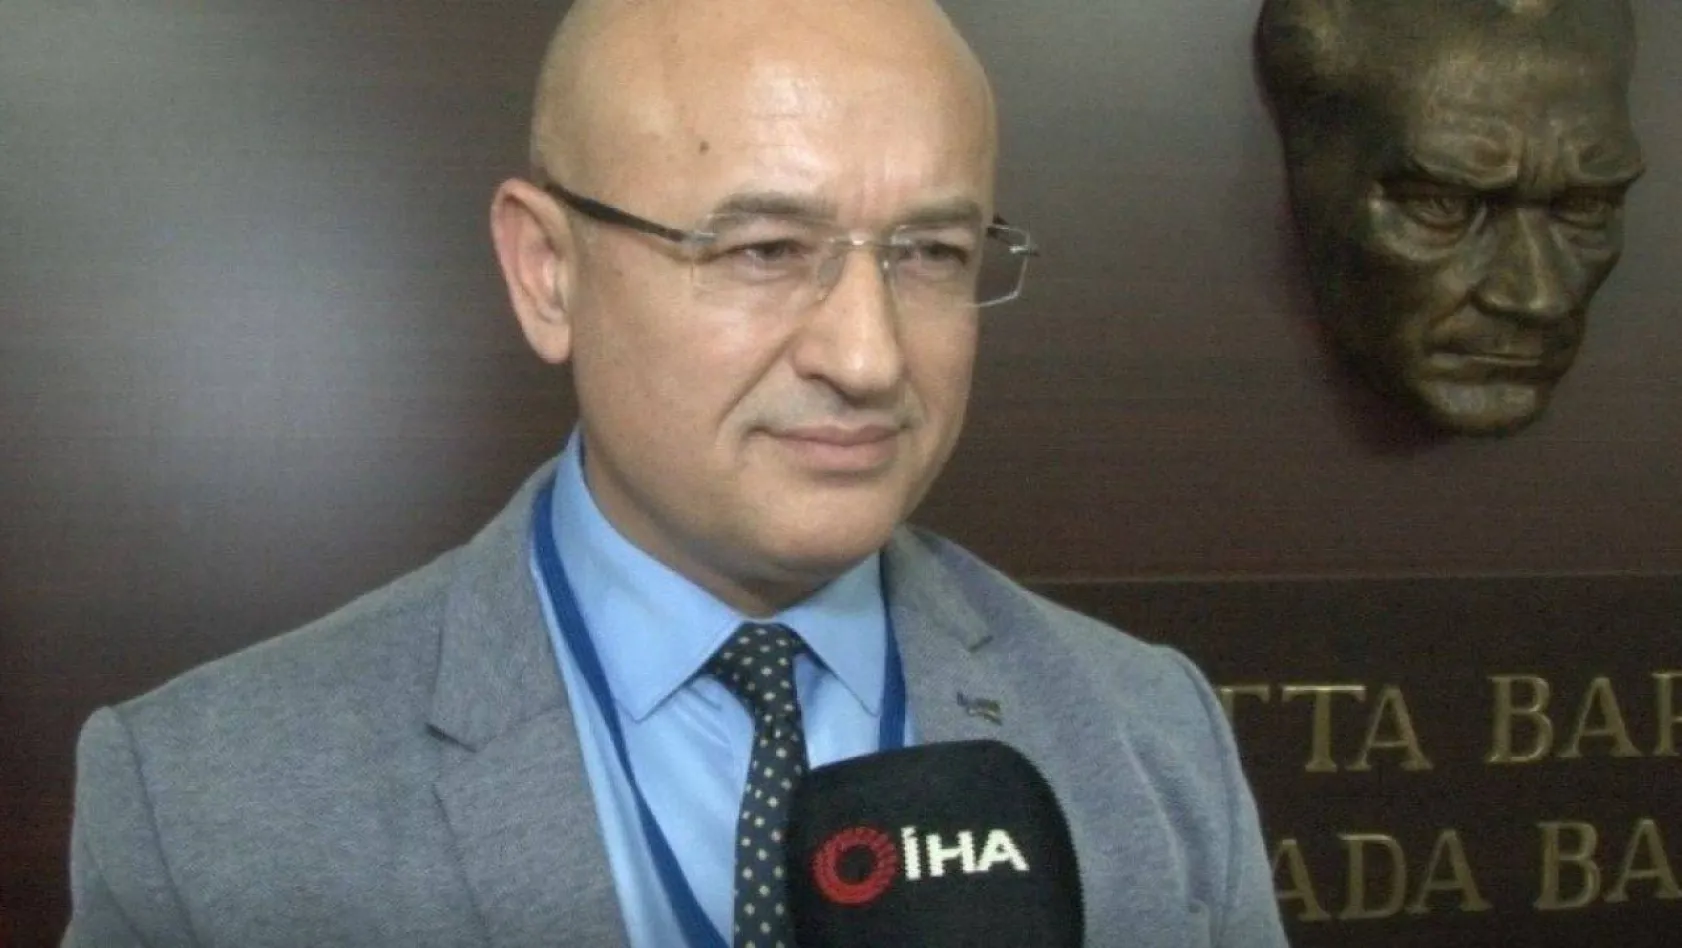 Askeri Stratejist Dr. Kemal Olçar, DAEŞ'in üstlendiği Moskova terör saldırısını analiz etti